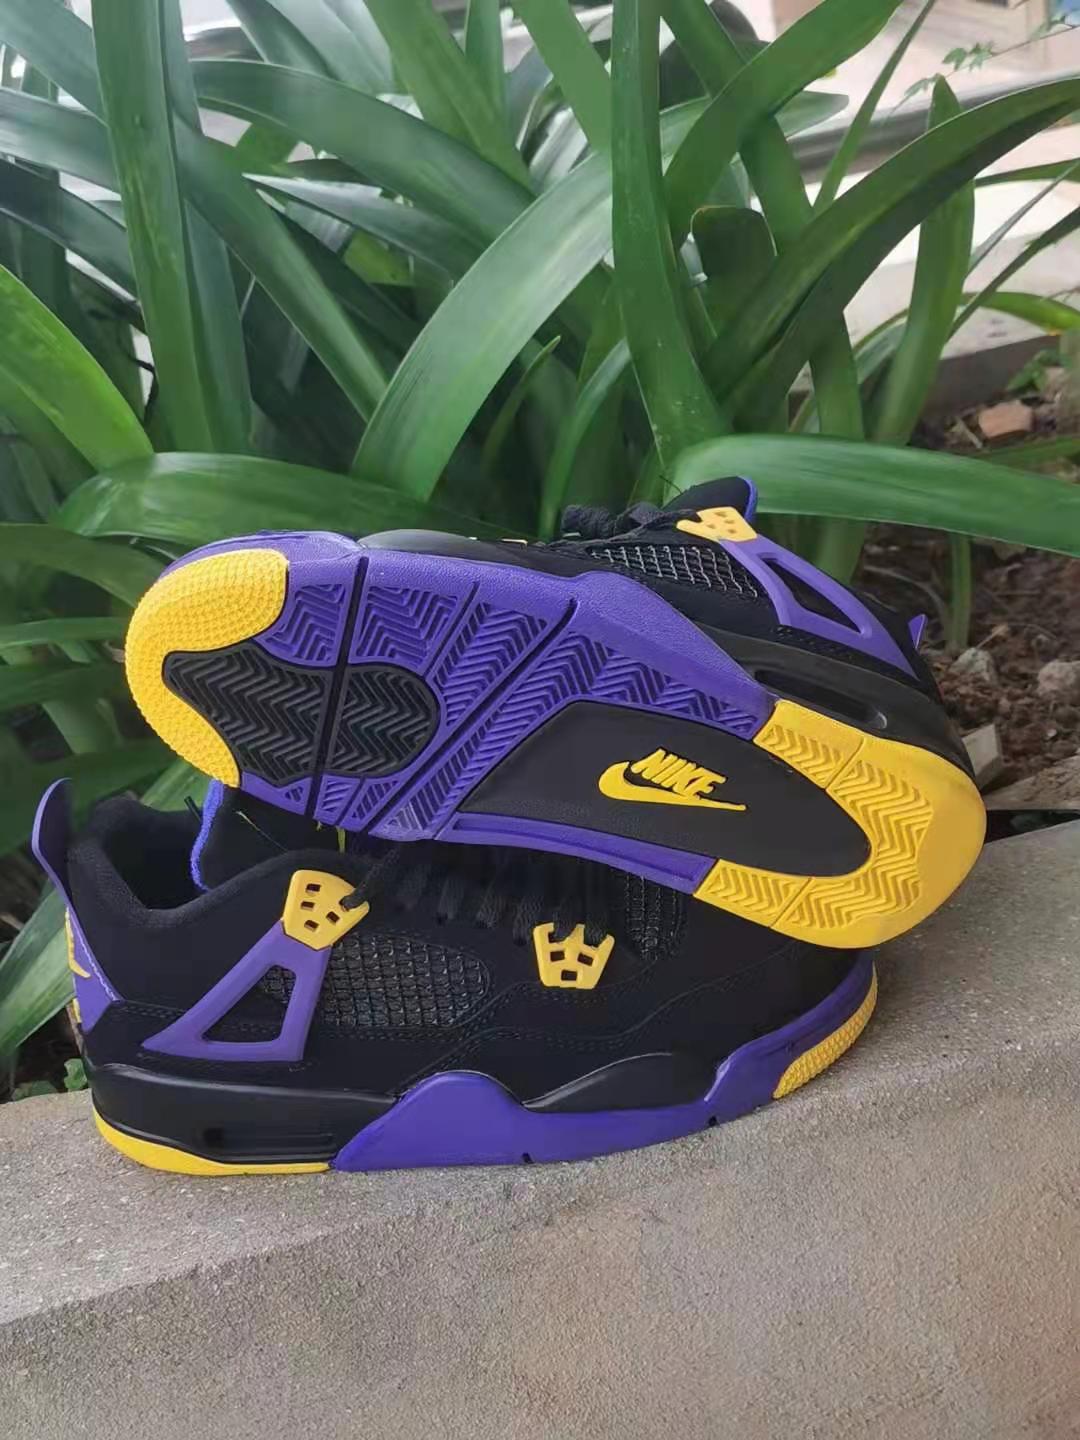 2021 Air Jordan 4 Lakers Purple Black Yellow Shoes